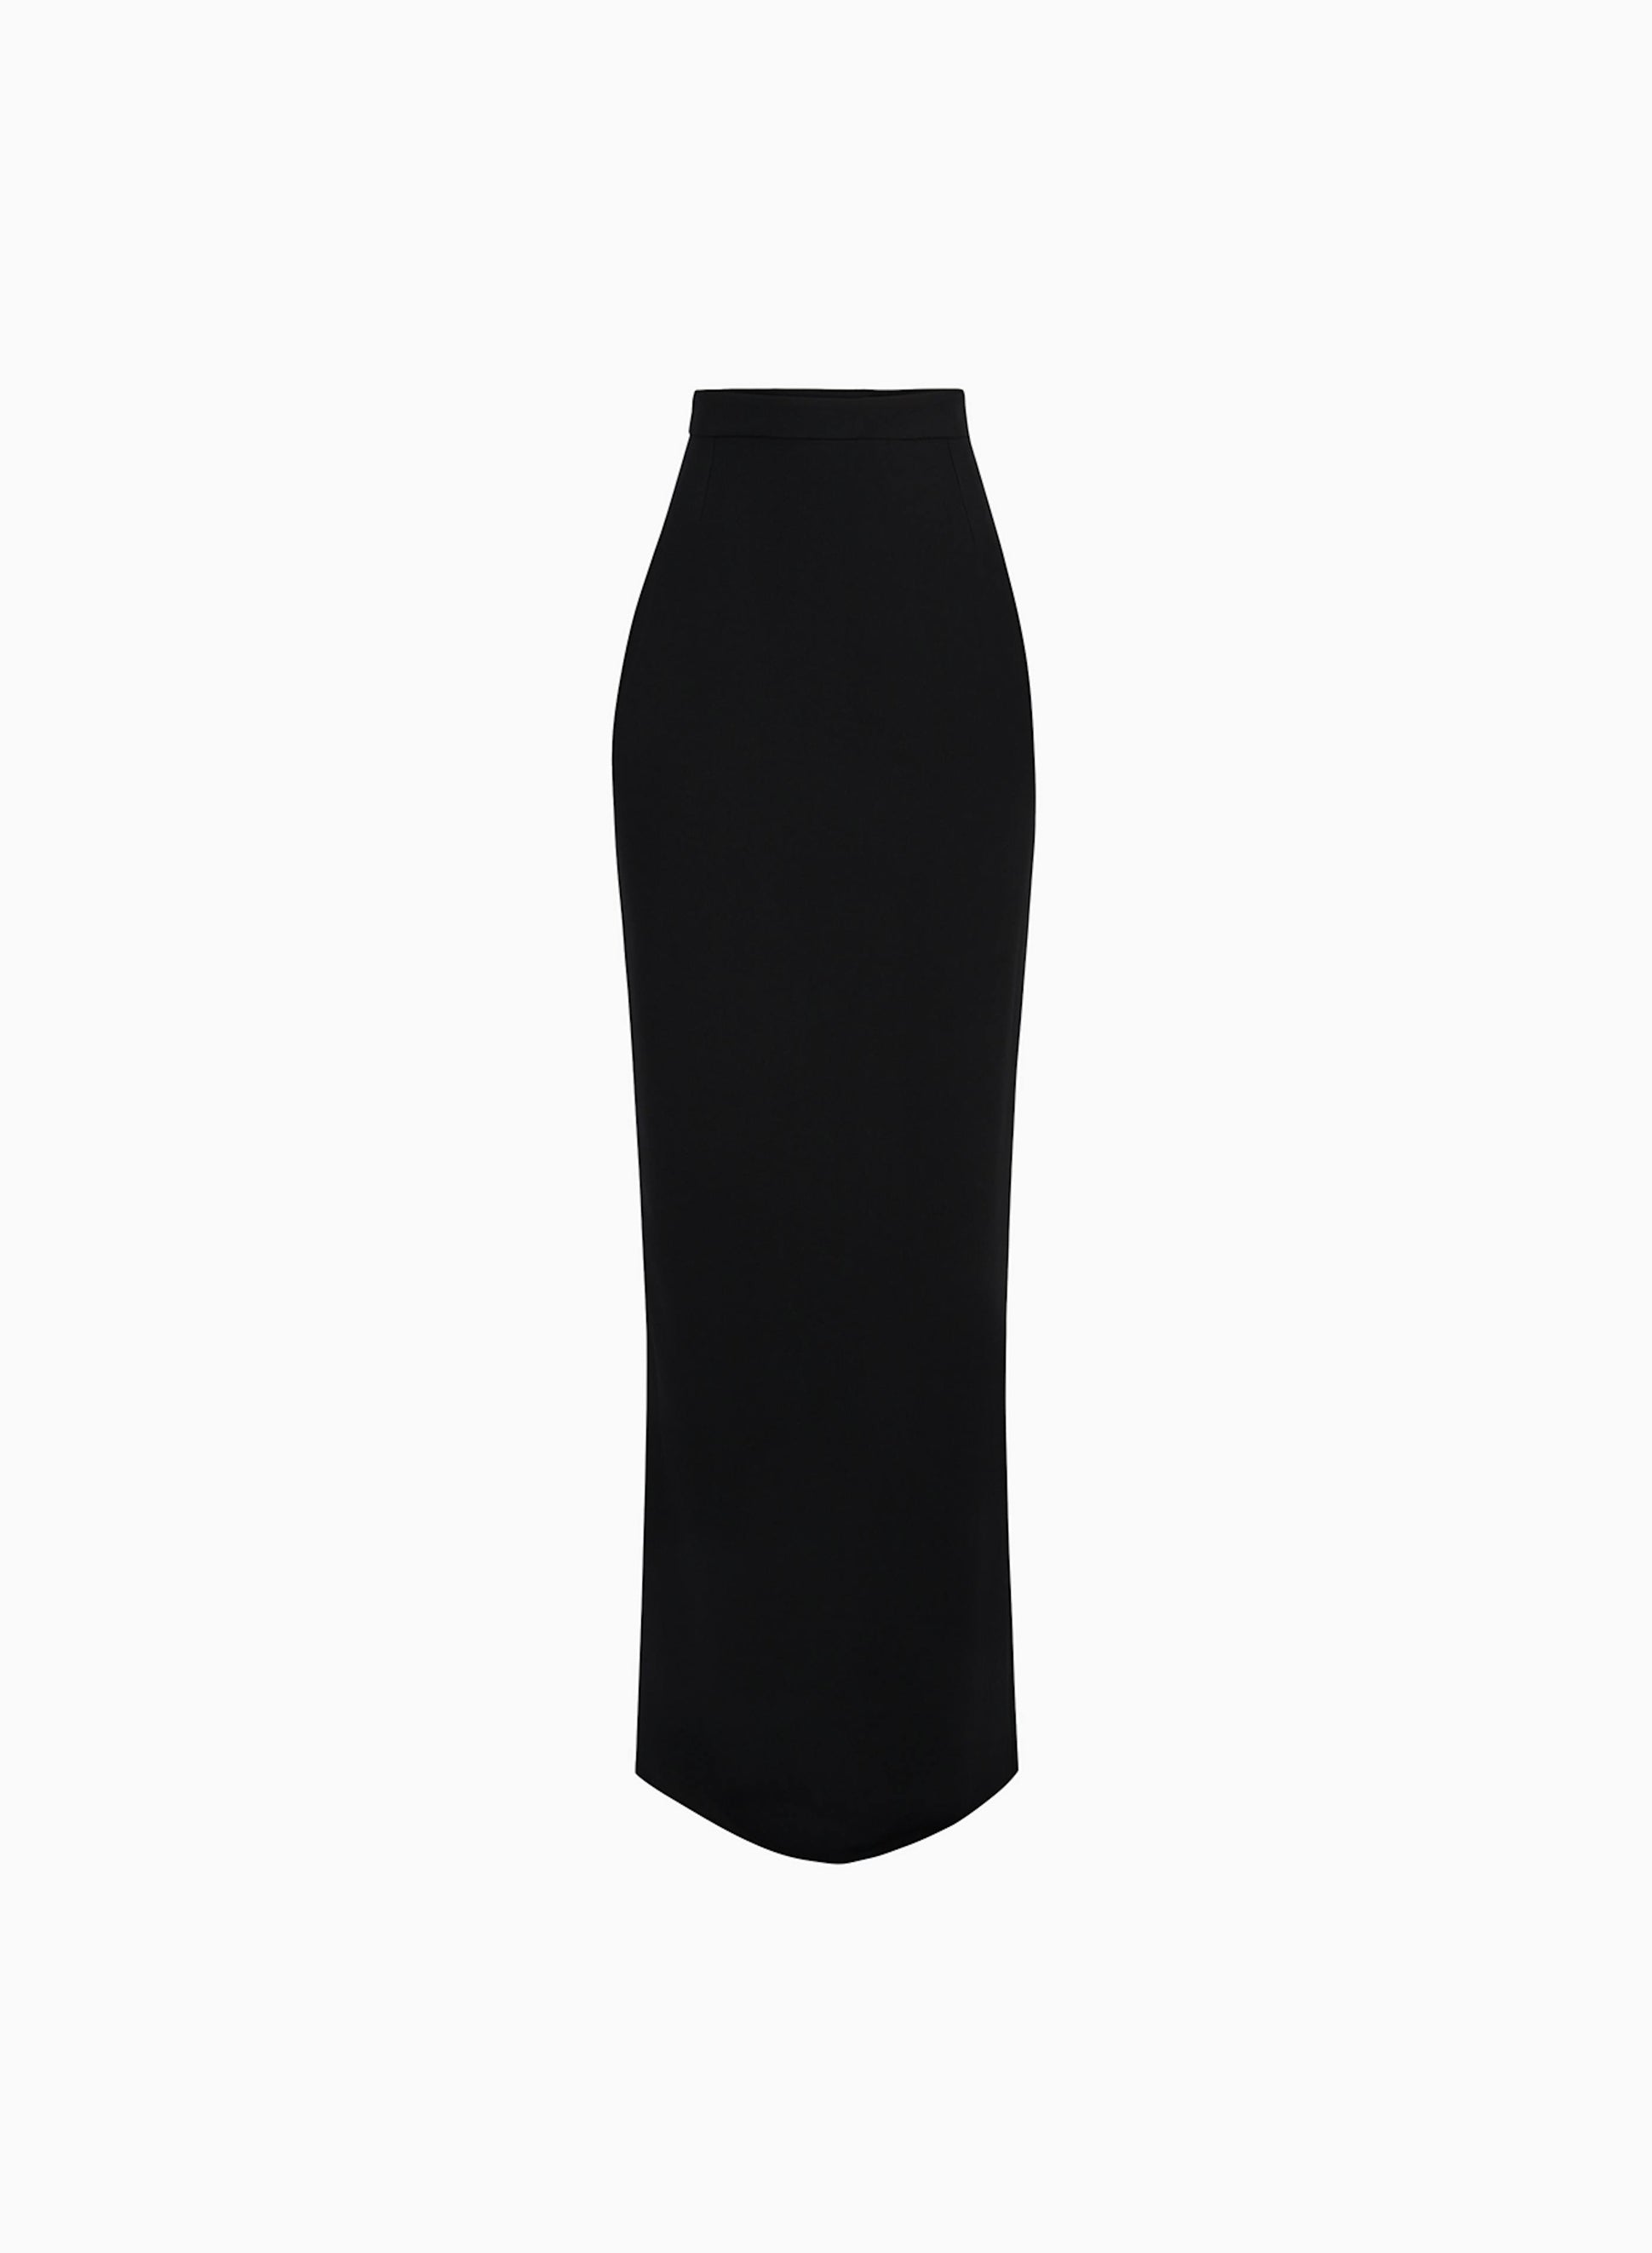 Long pencil skirt in black - Nina Ricci